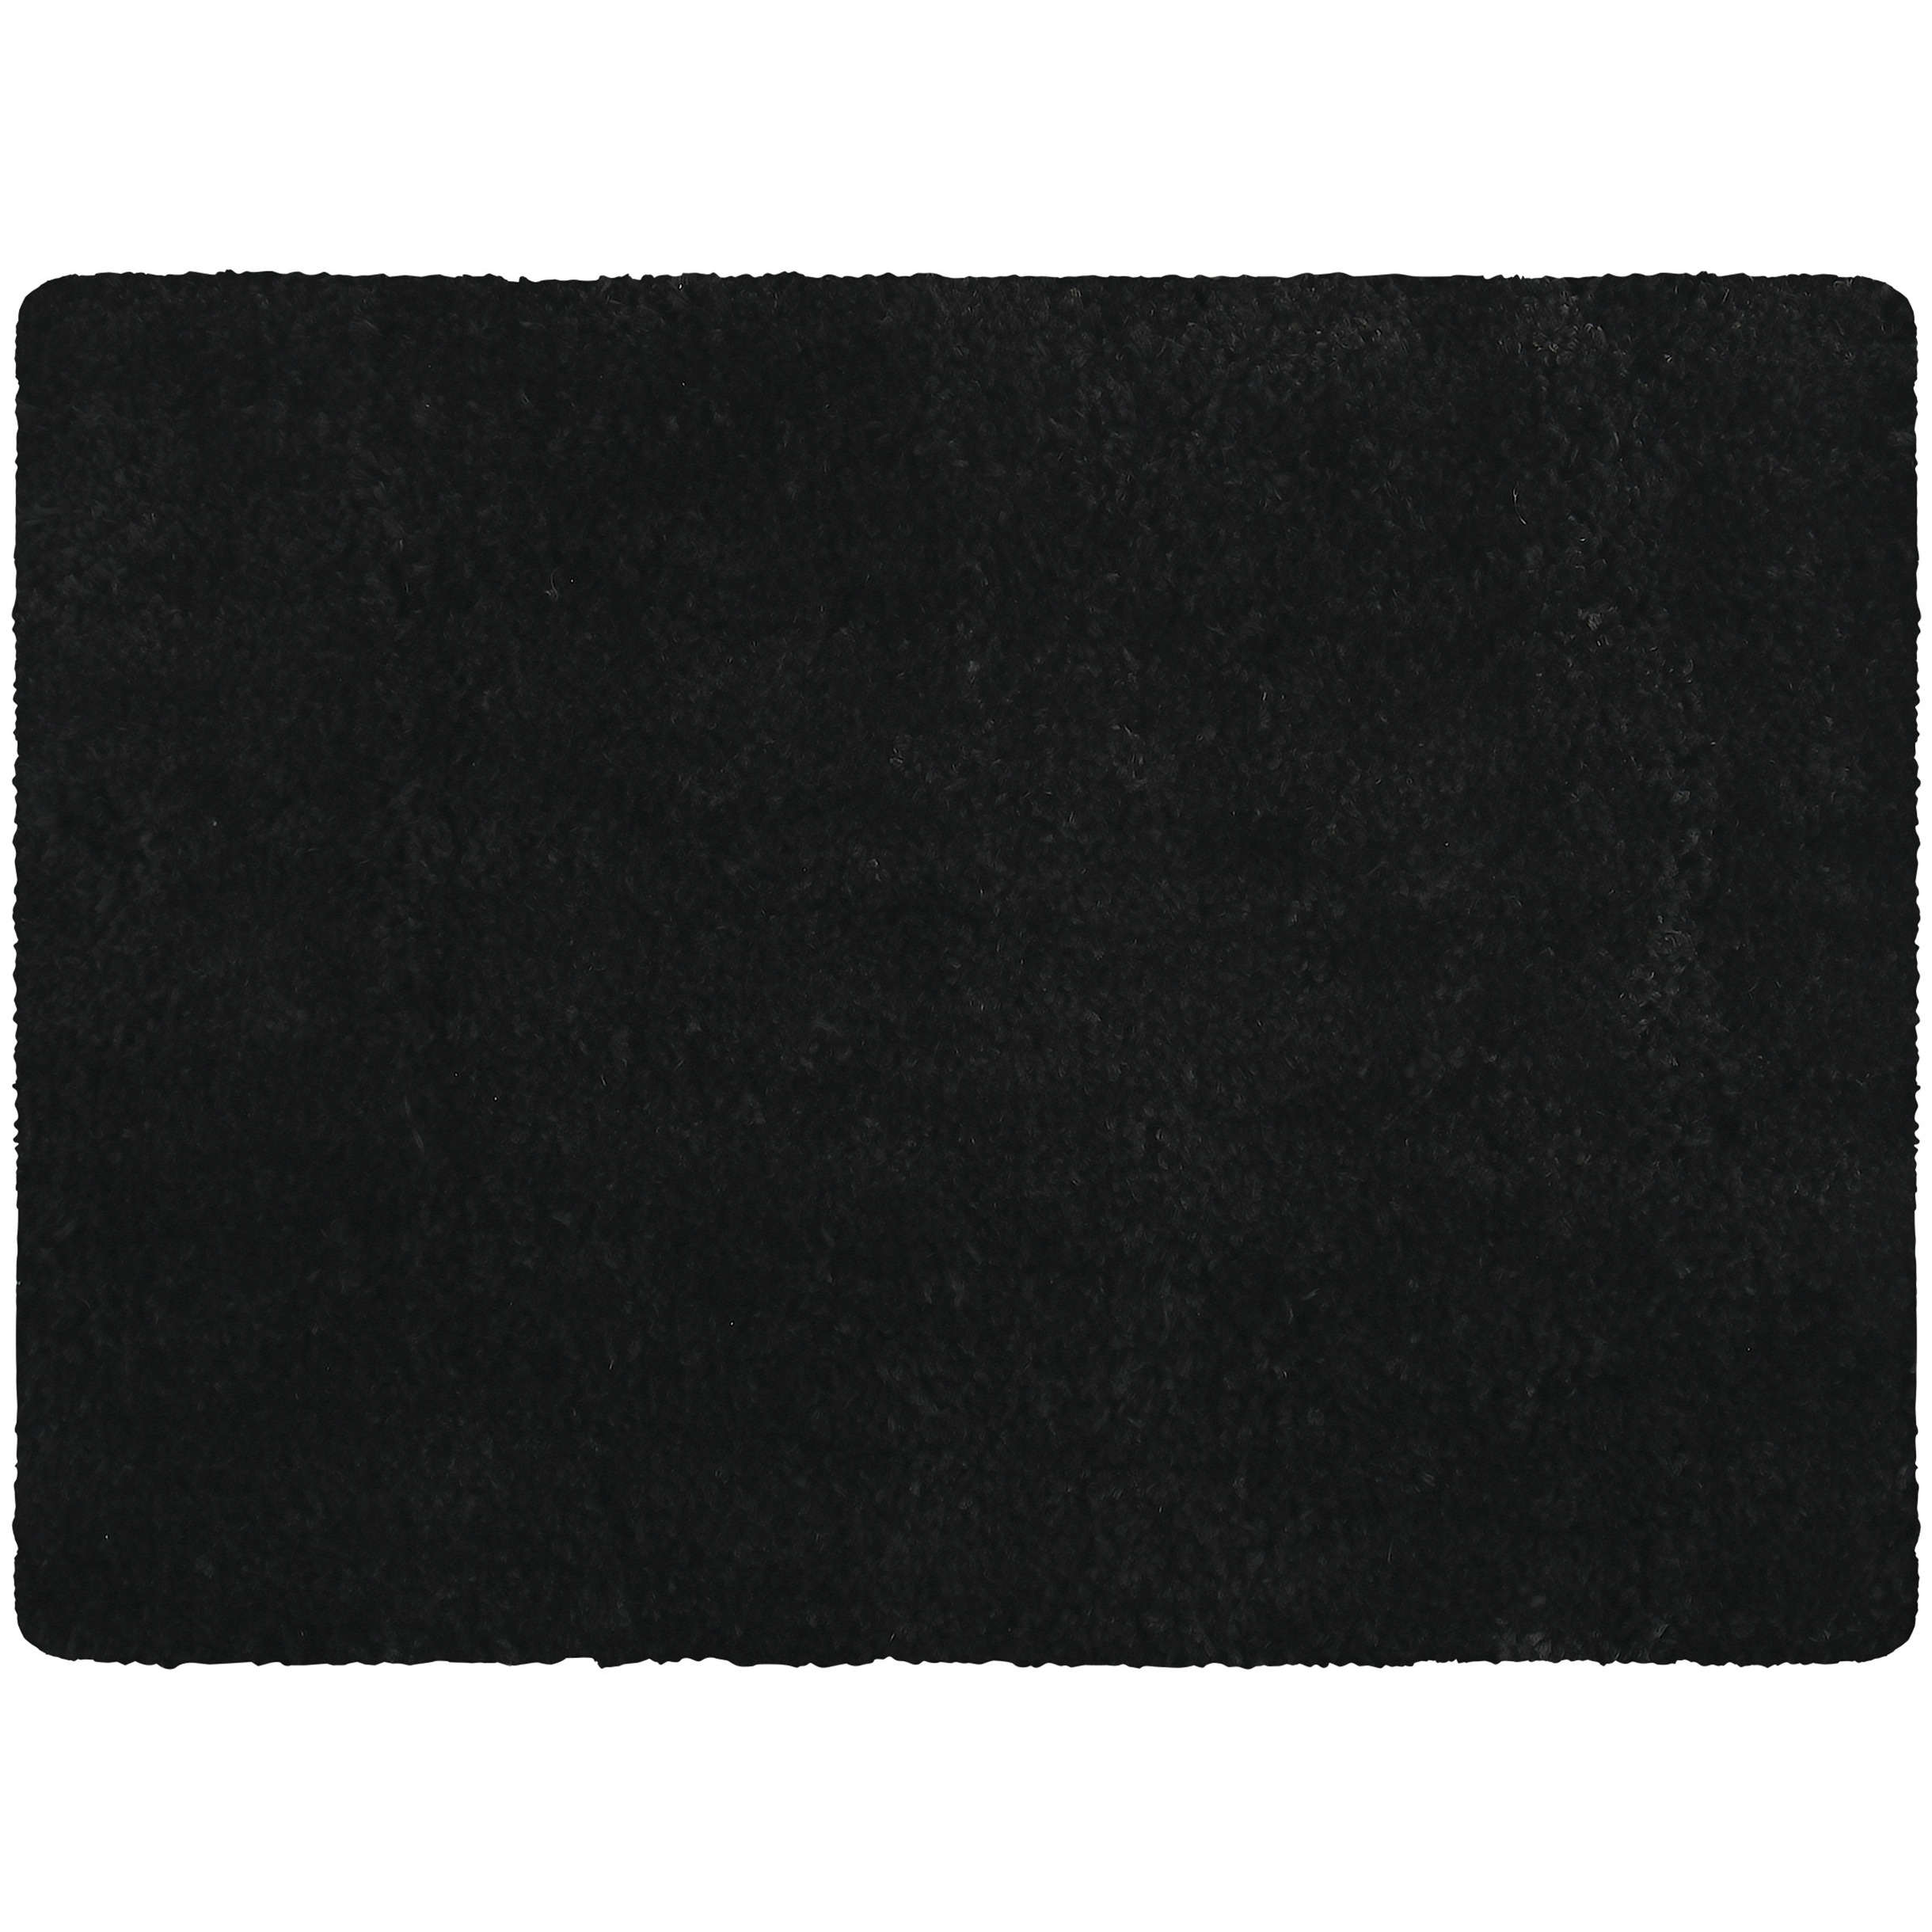 Badkamerkleedje-badmat tapijt voor op de vloer zwart 50 x 70 cm langharig